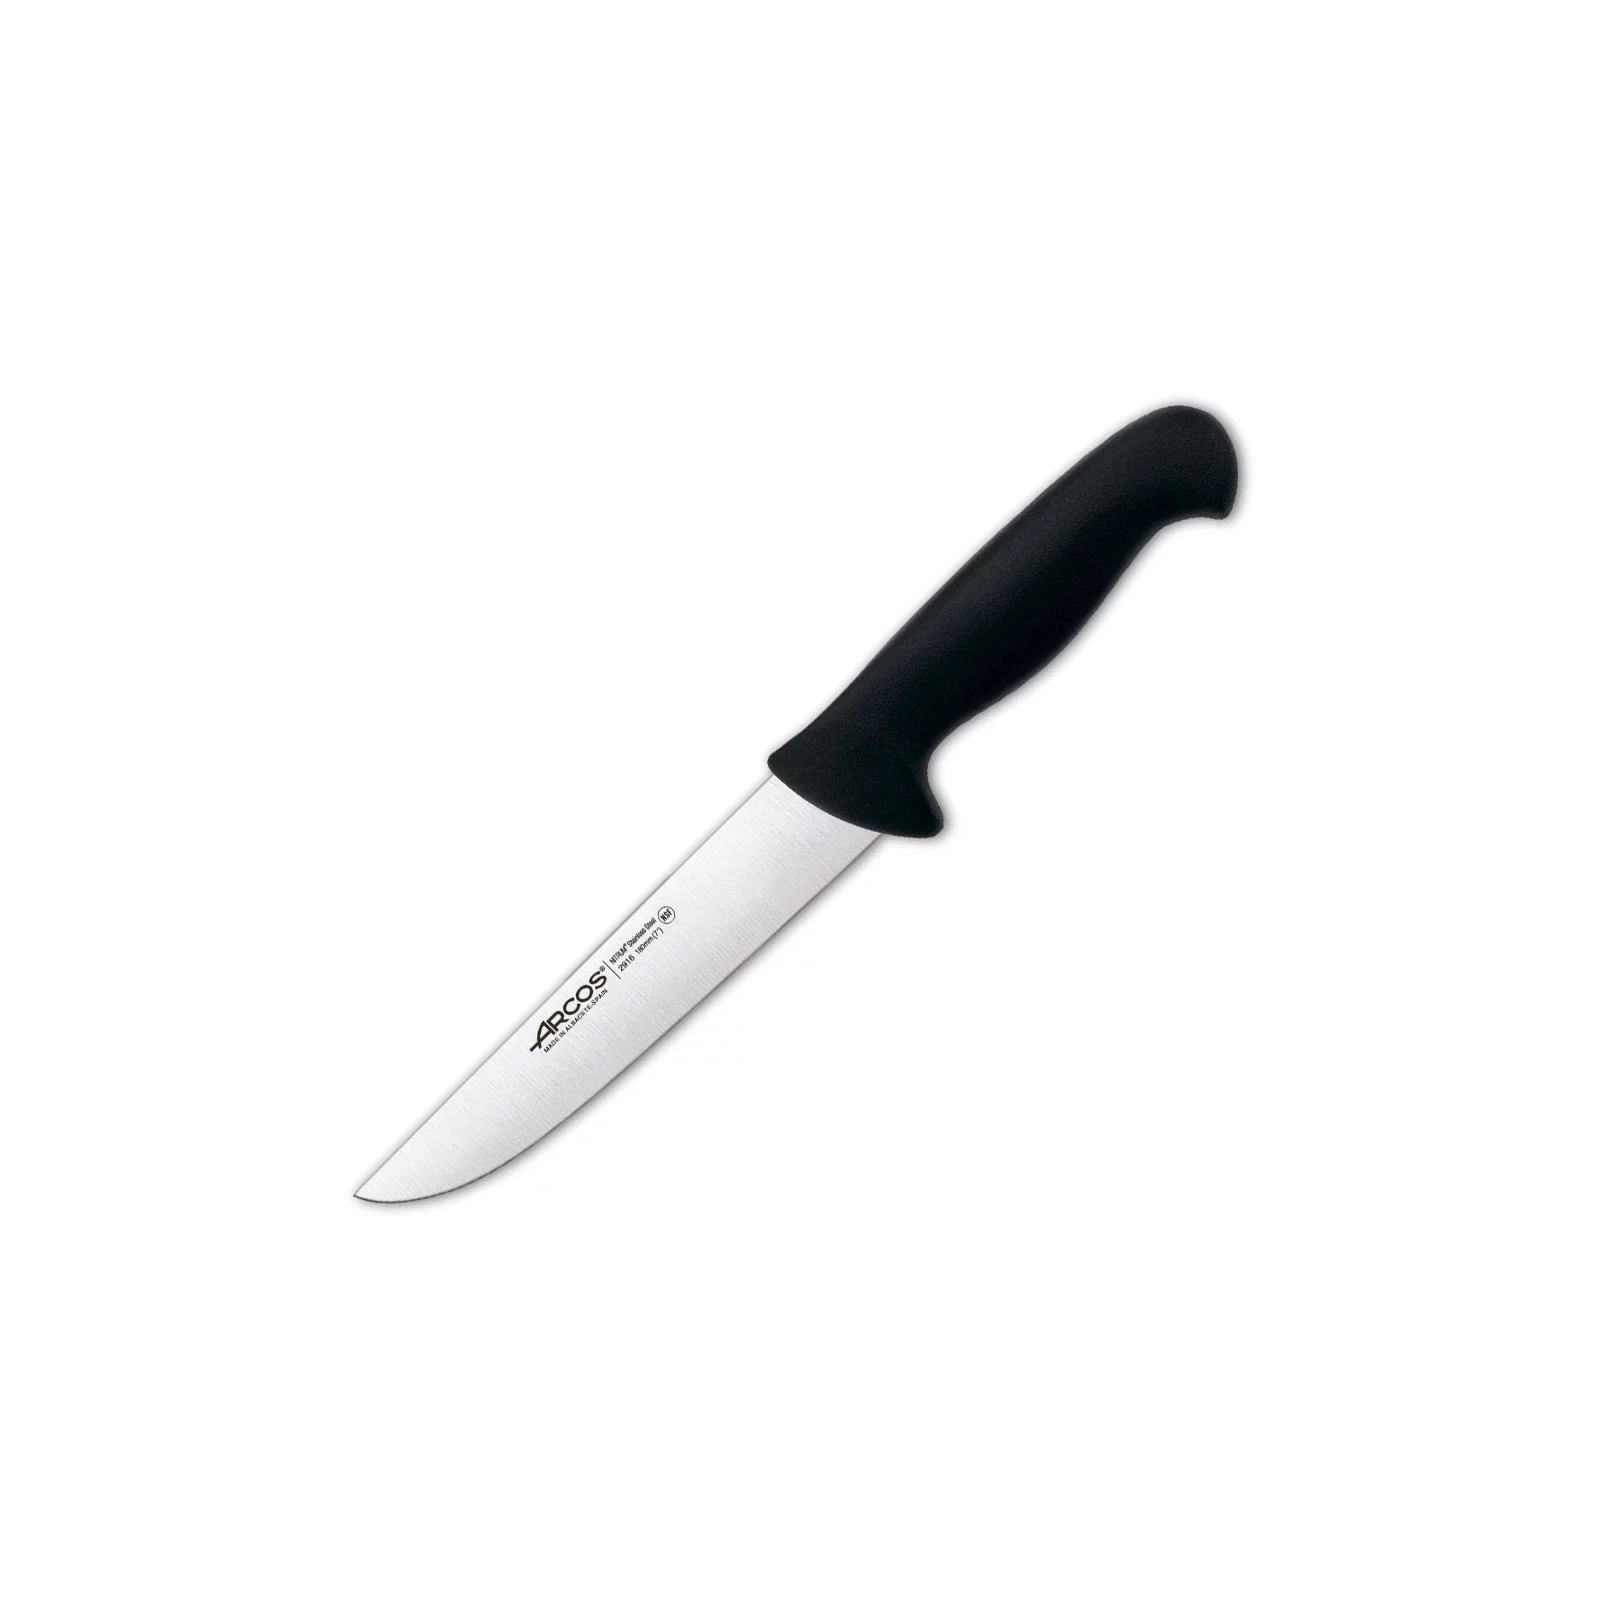 Кухонный нож Arcos серія "2900" для м'яса 180 мм Чорний (291625)